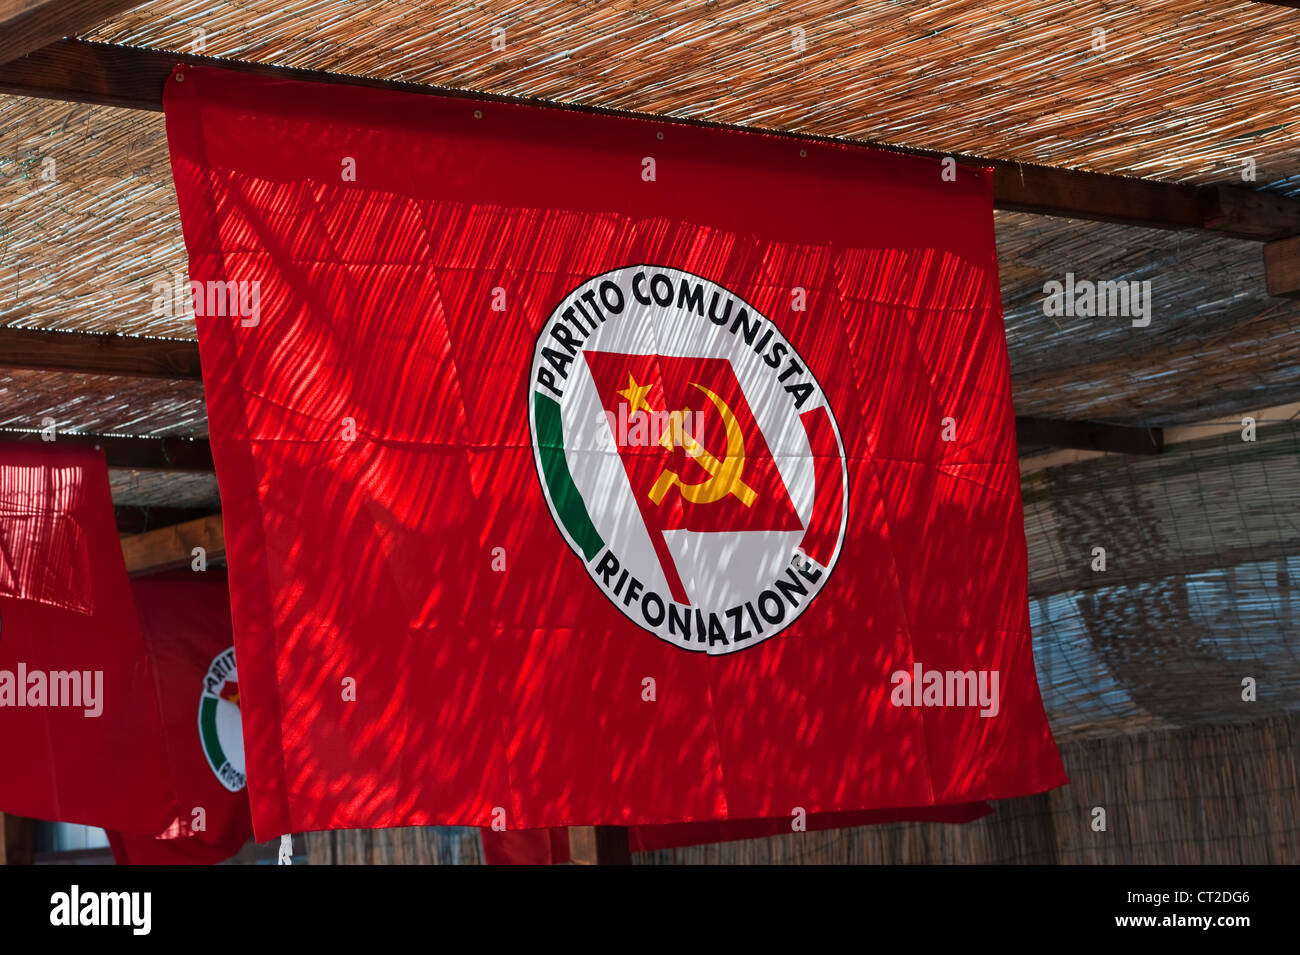 La bandiera rossa della RPC (Partito della Rifondazione Comunista) vola per il giorno di maggio sulla Giudecca, Venezia, Italia. Foto Stock